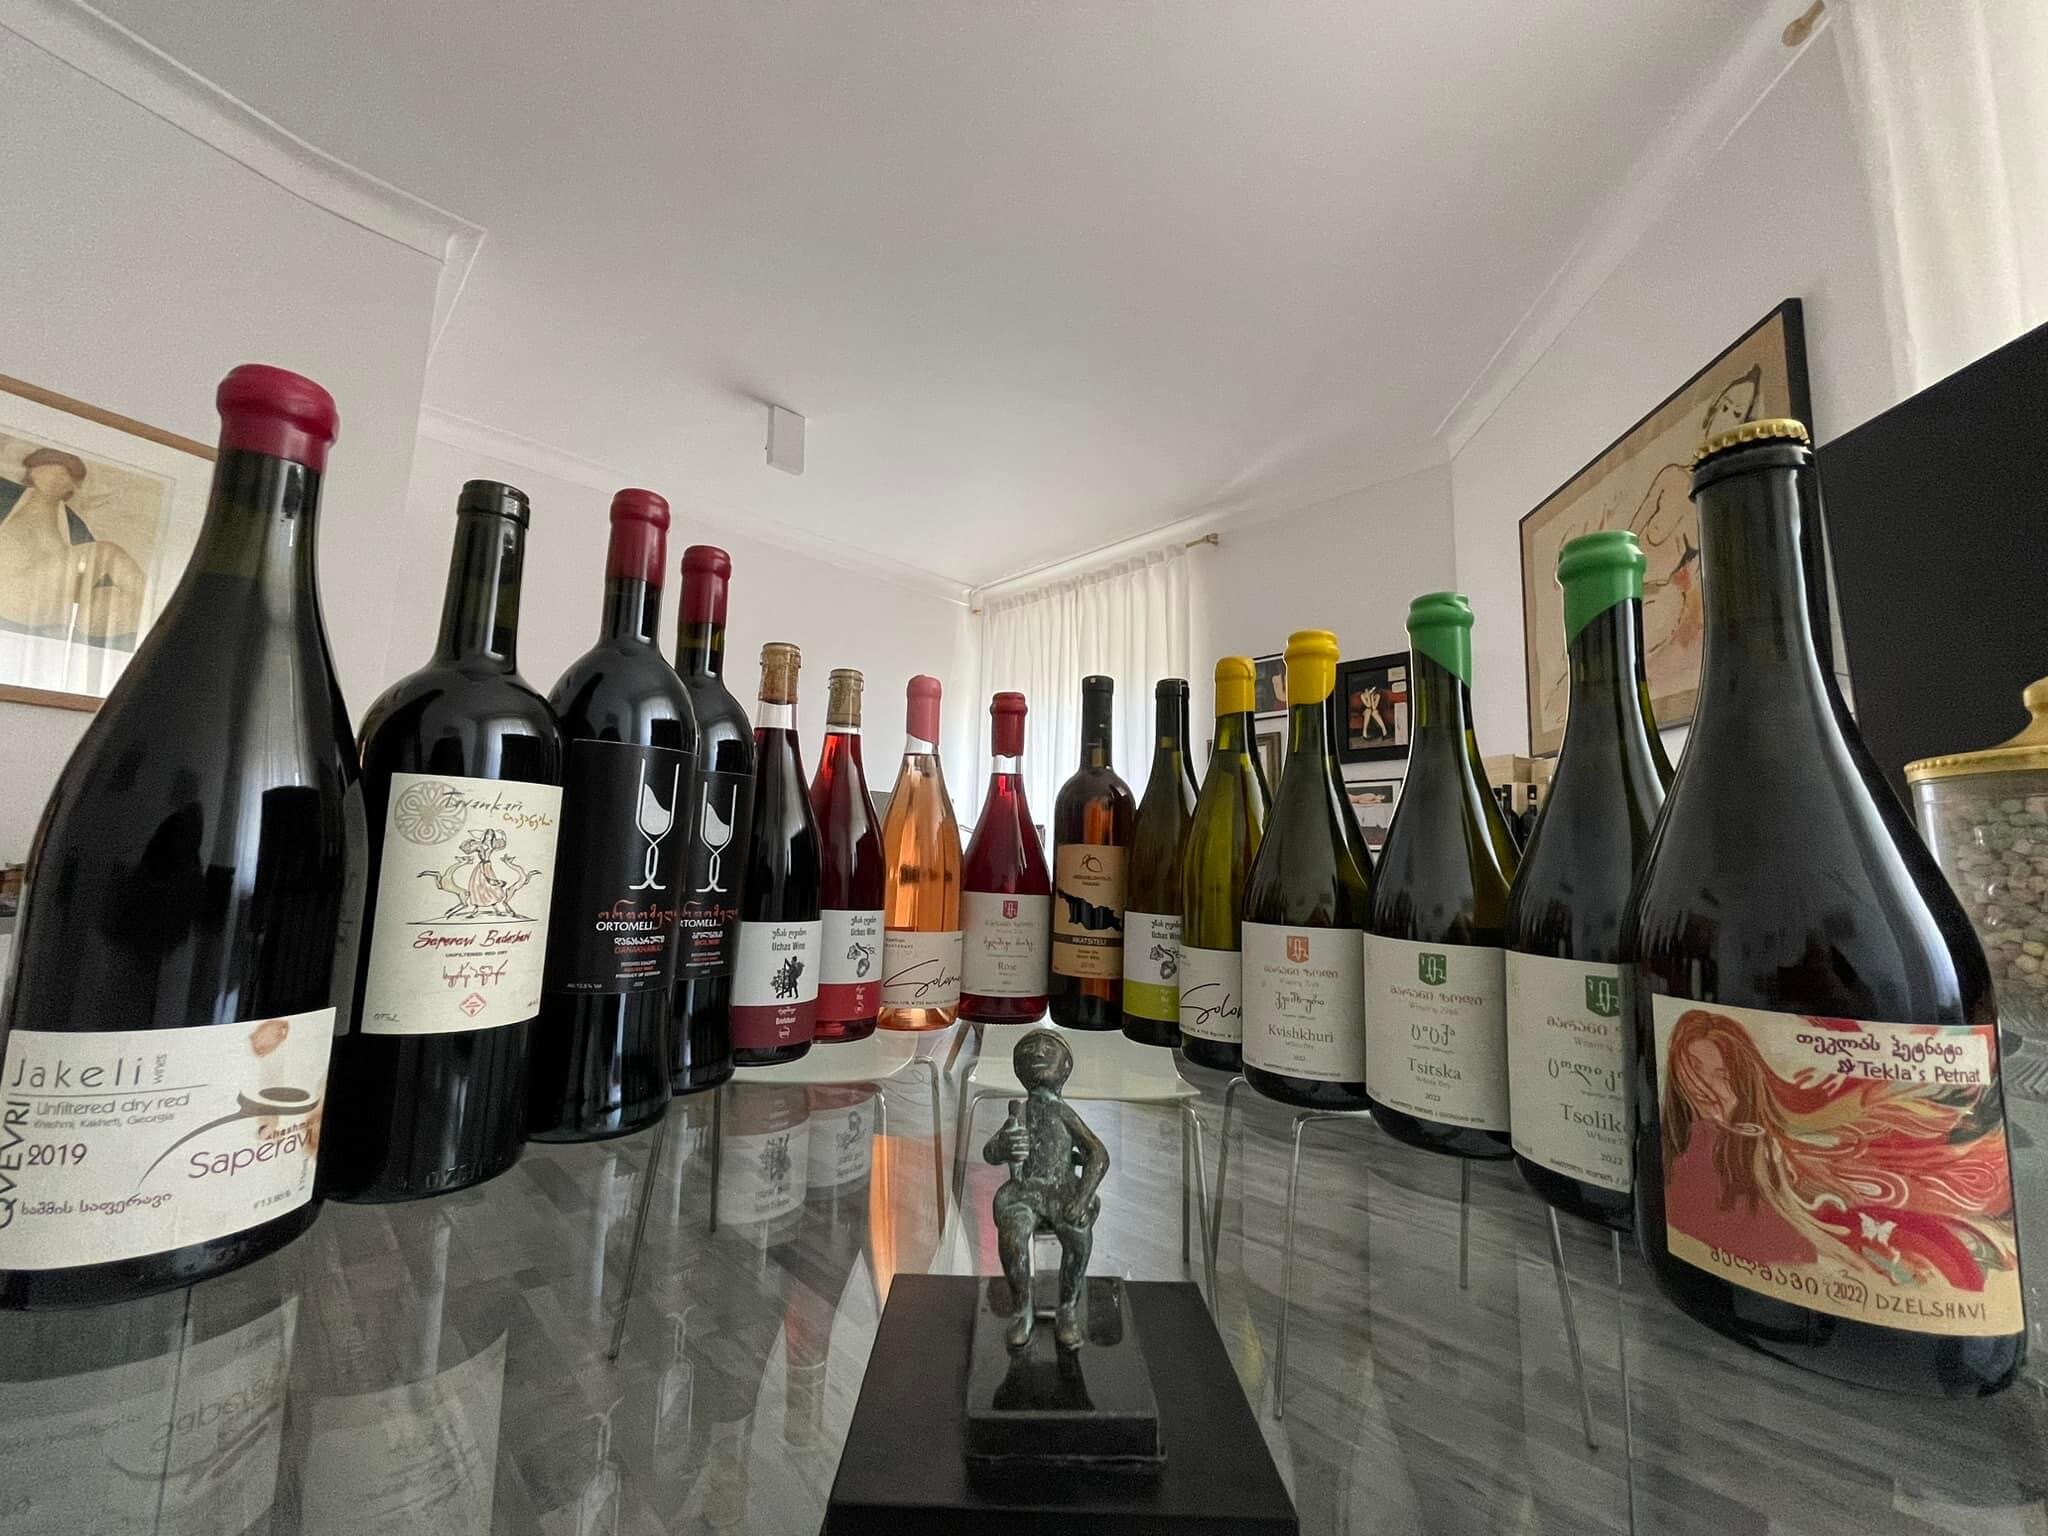 იტალიაში იმერული ღვინის დეგუსტაცია გაიმართა